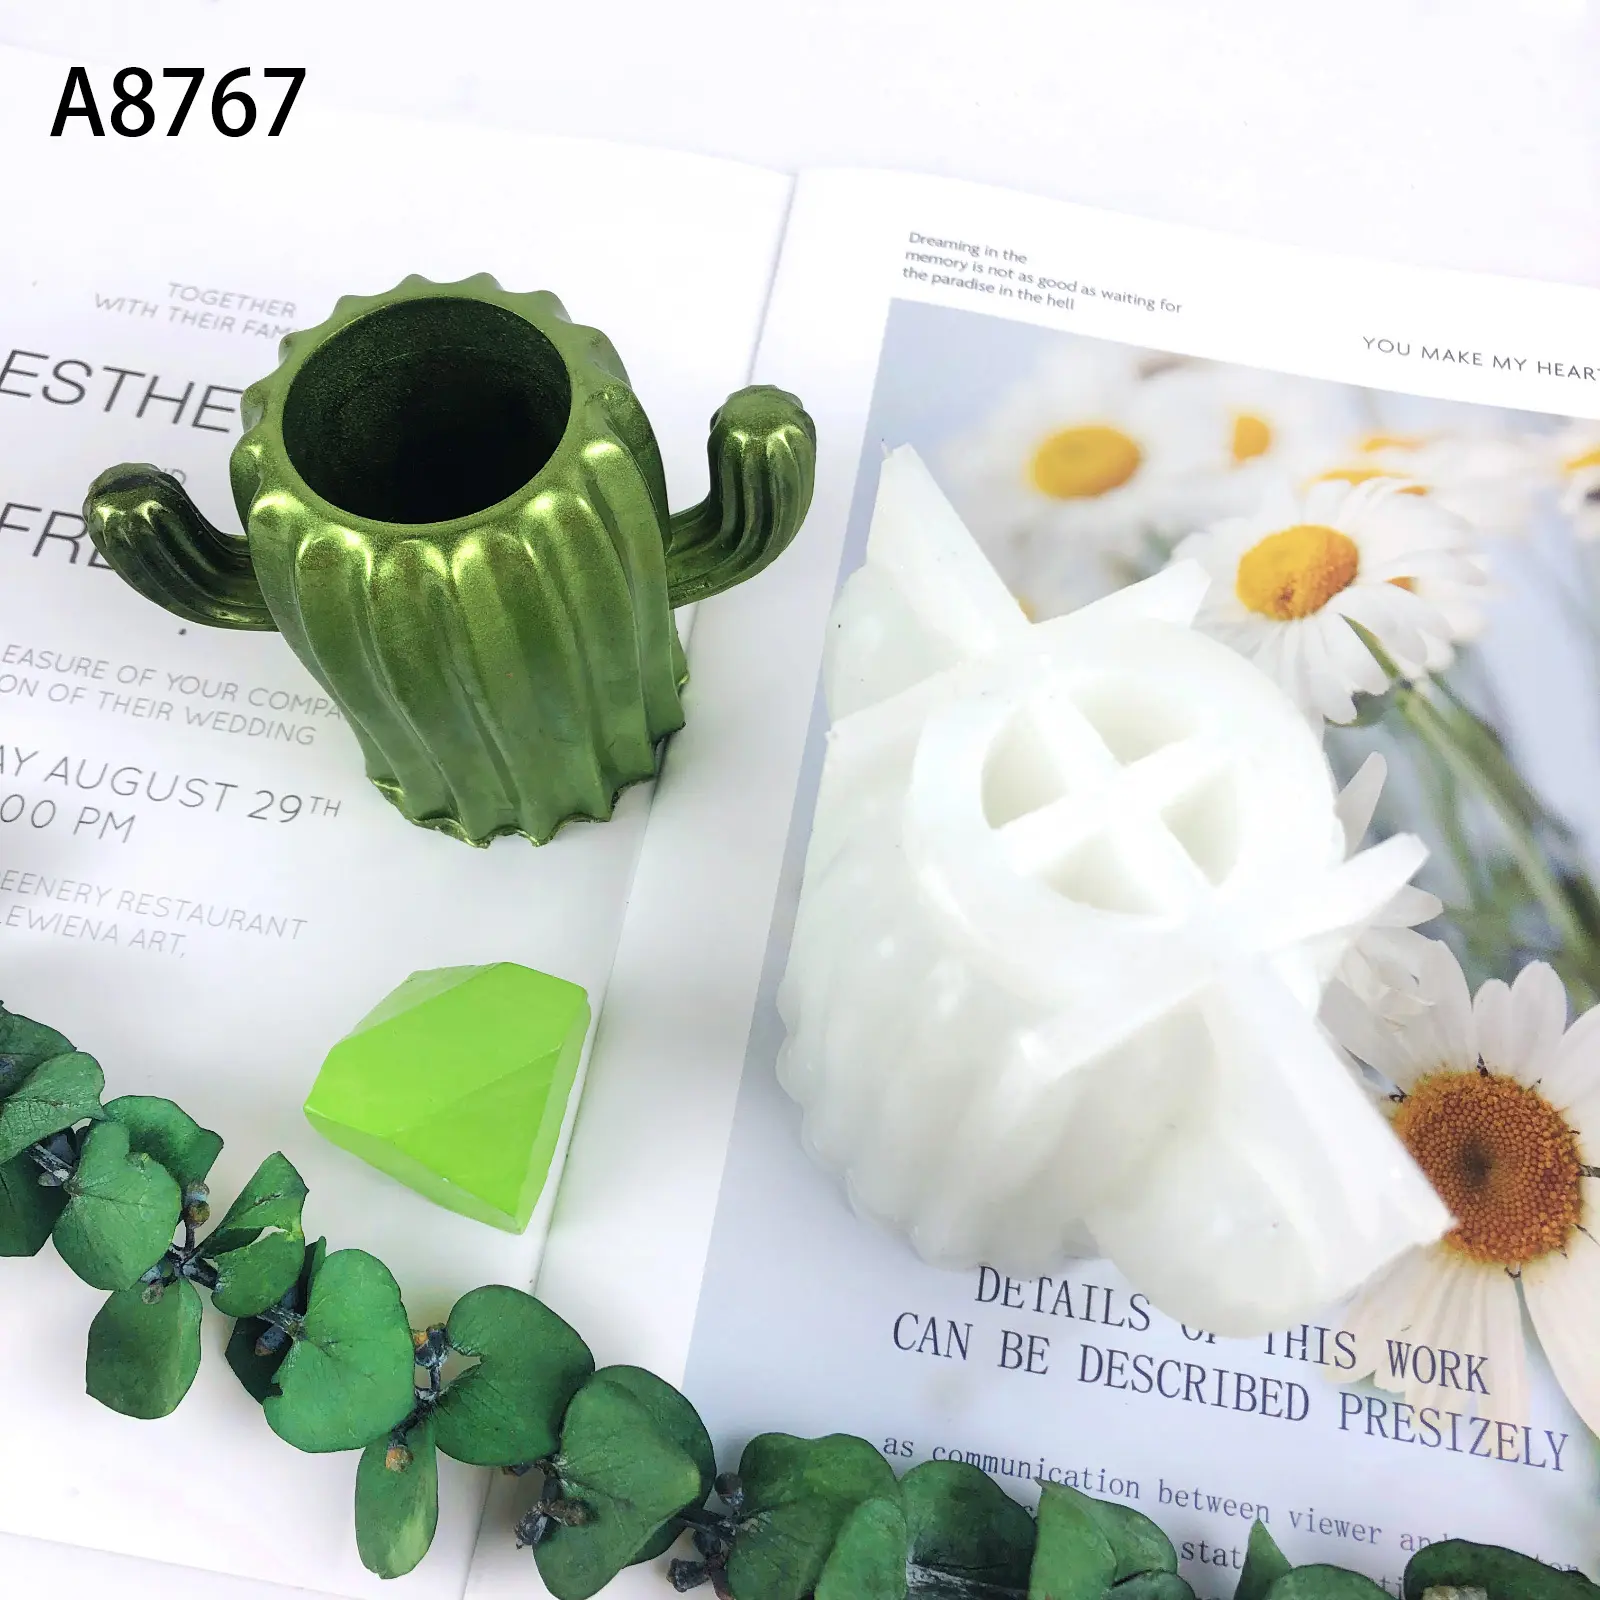 A8767 portapenne Cactus vaso stampo in Silicone cilindro fioriera vaso stampo portaspazzole stampo per resina calcestruzzo gesso polimero